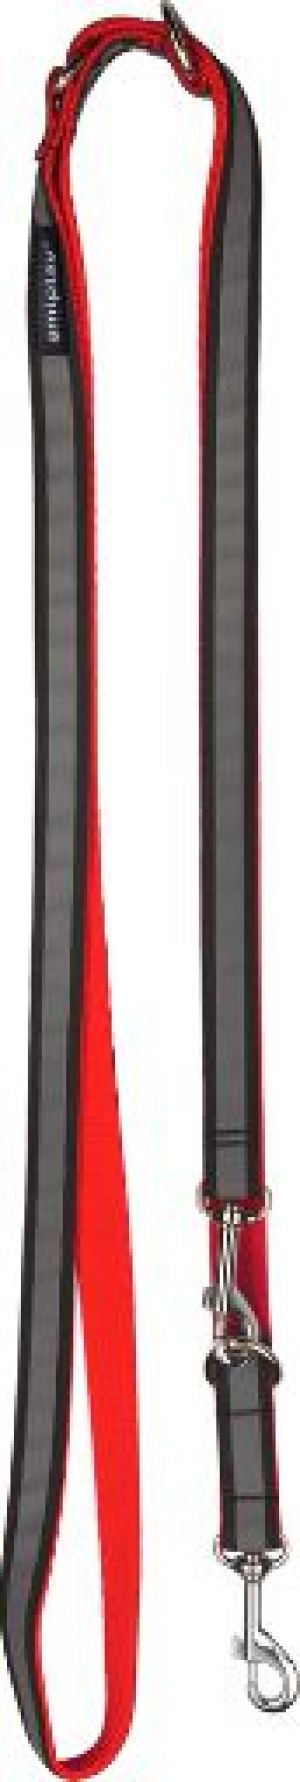 Ami Play Smycz regulowana 6 in 1 Shine XL 100-200 x 2,5cm czerwony 1